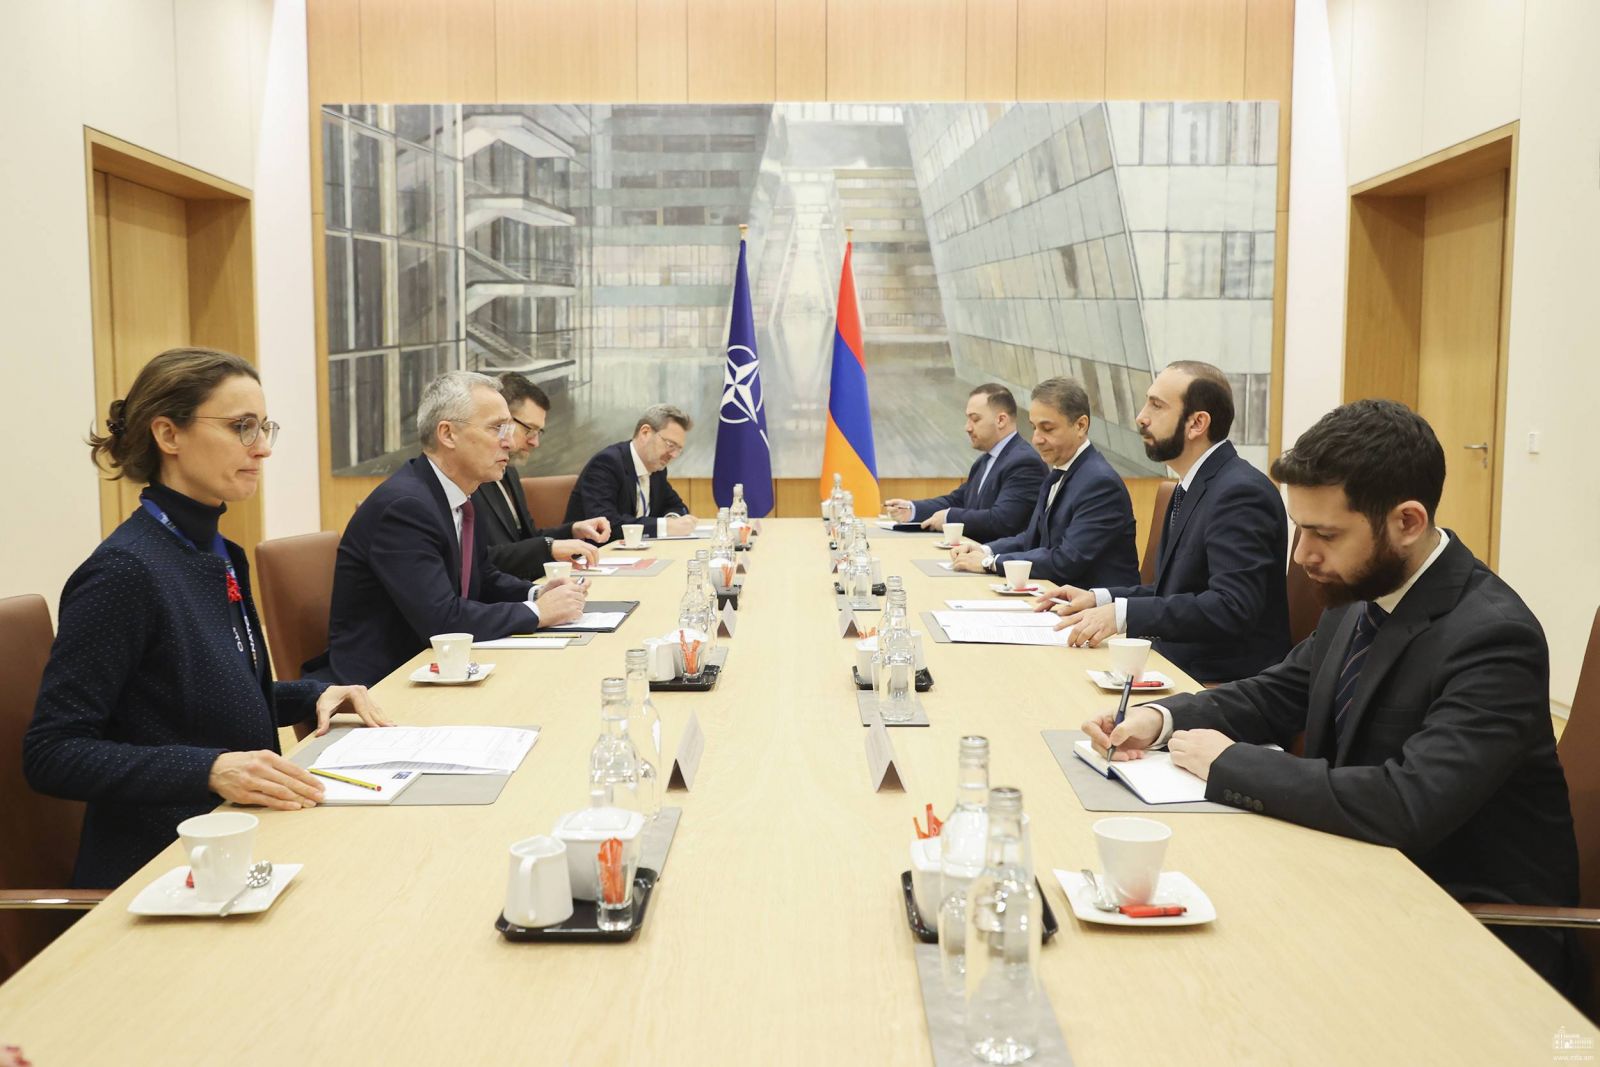 Мирзоян представил генеральному секретарю НАТО гуманитарный кризис, сложившийся в Нагорном Карабахе вследствие незаконного блокирования Азербайджаном Лачинского коридора